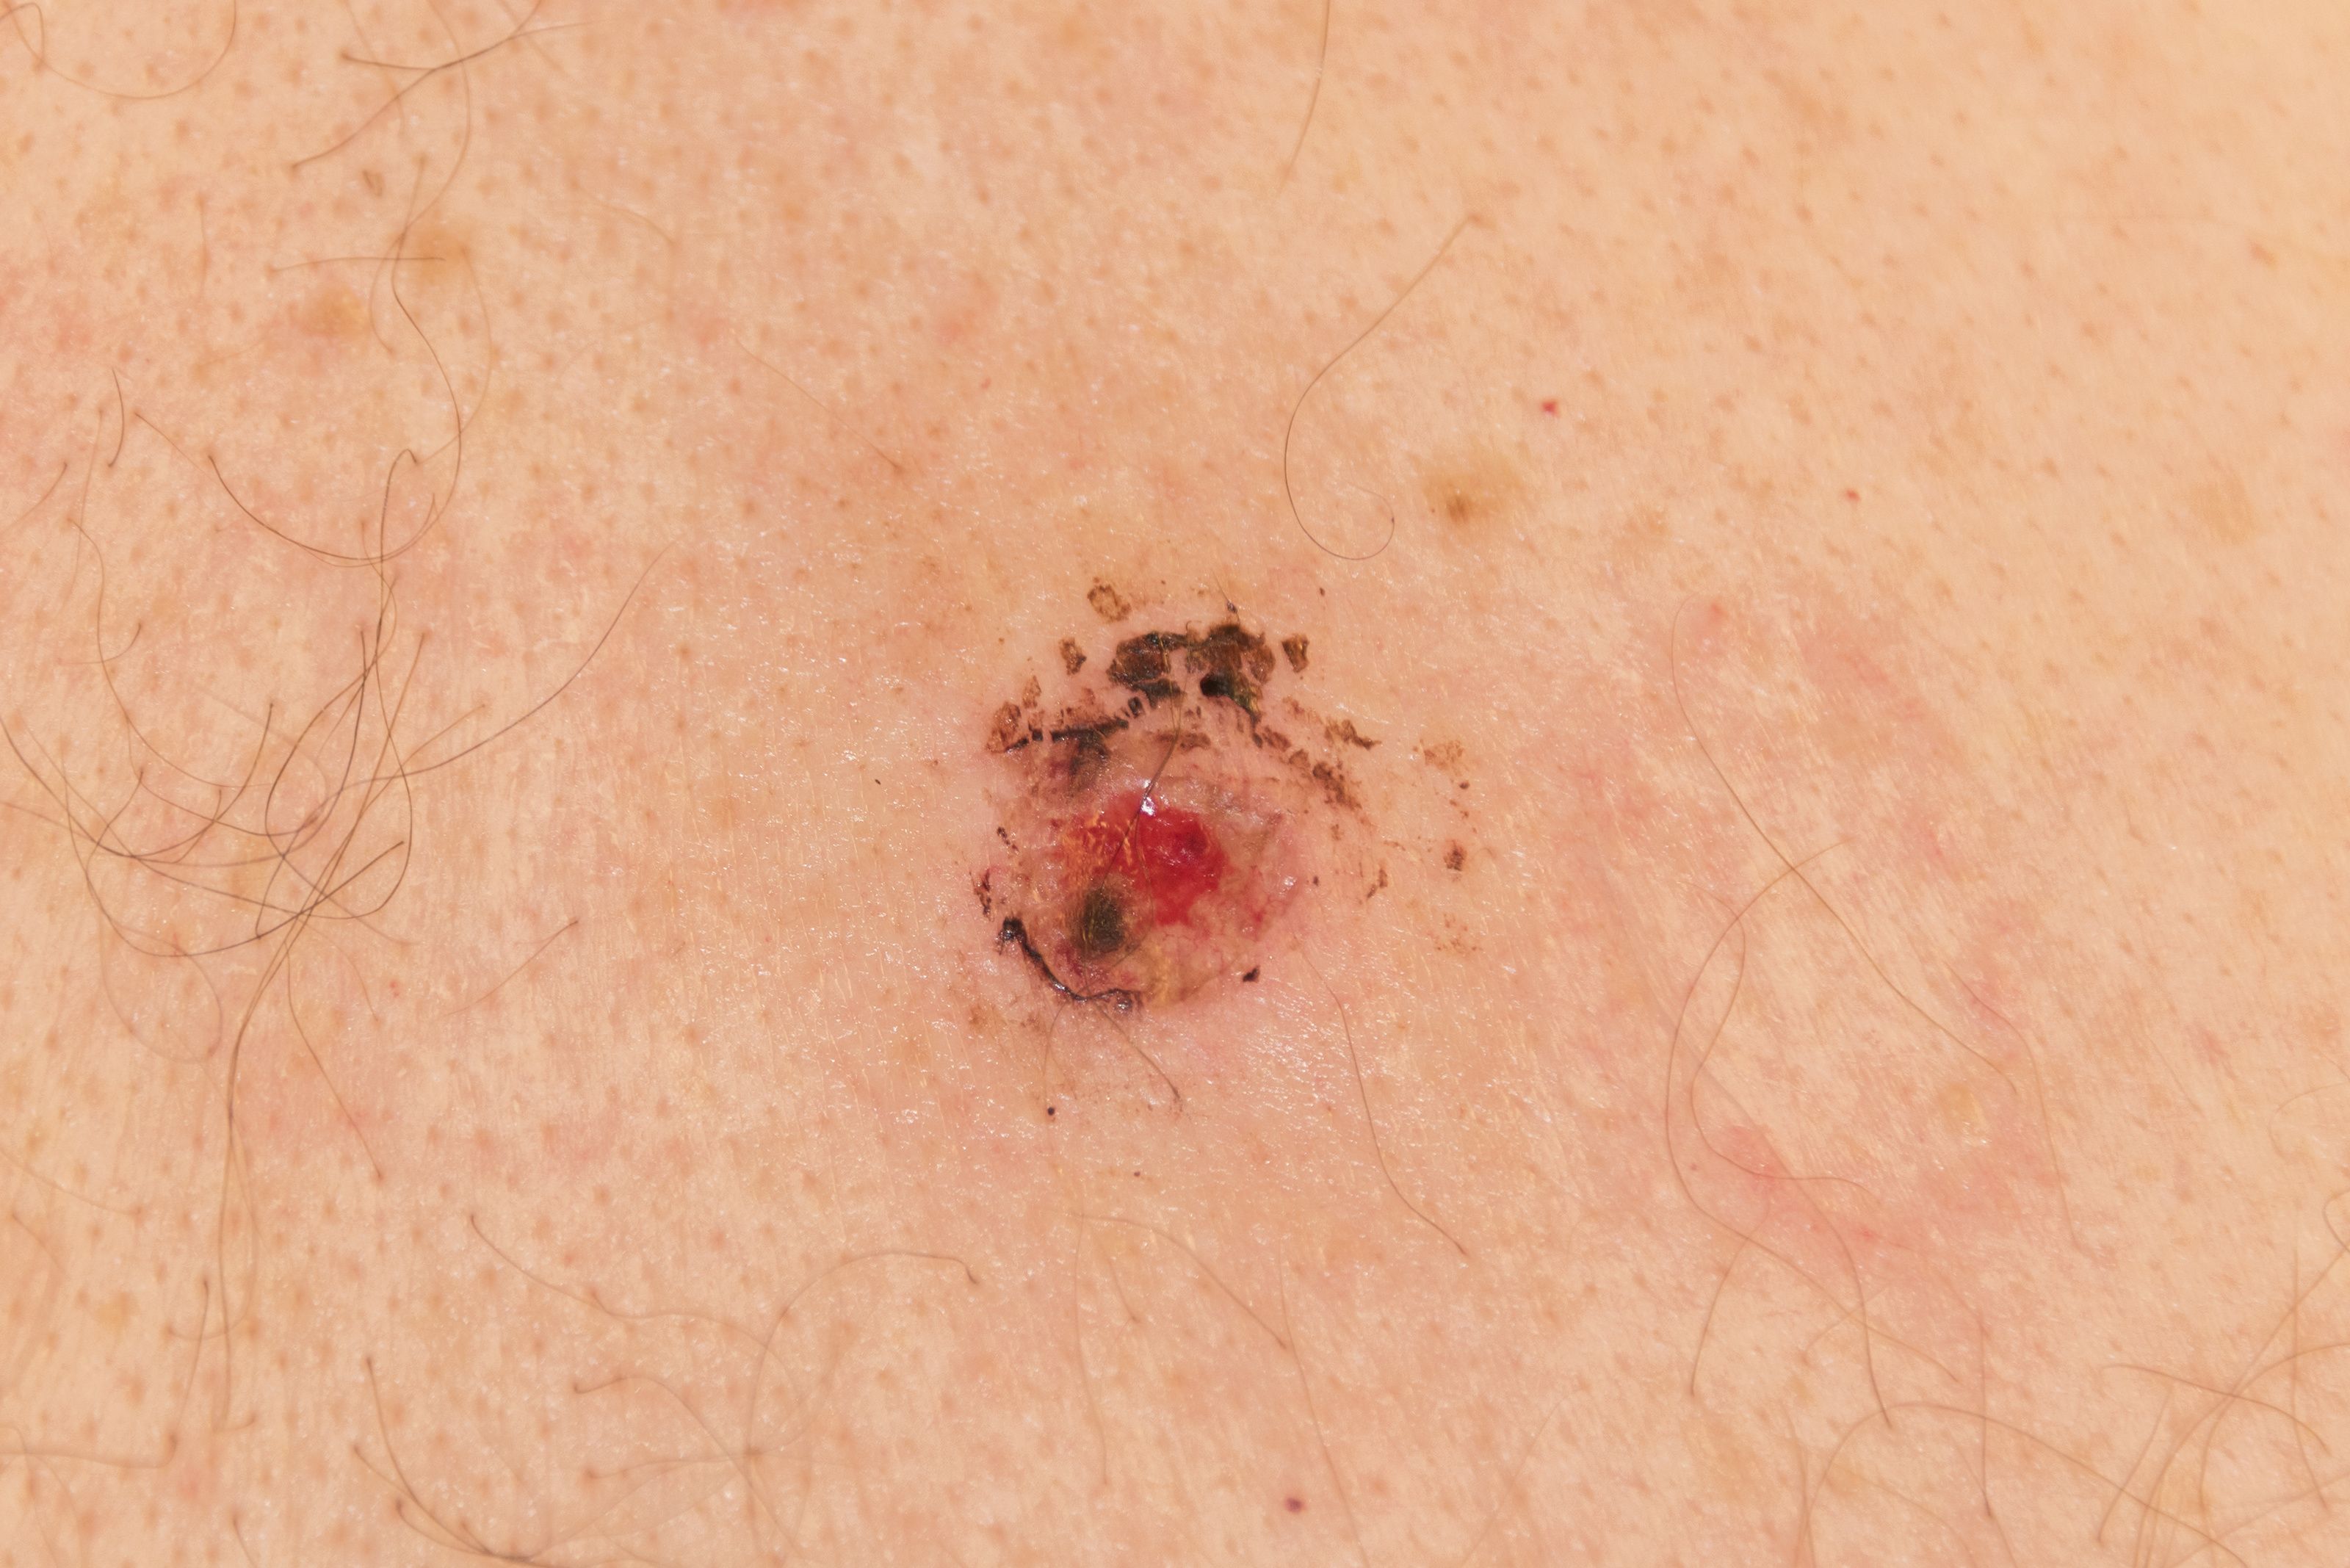 melanoma biopsy